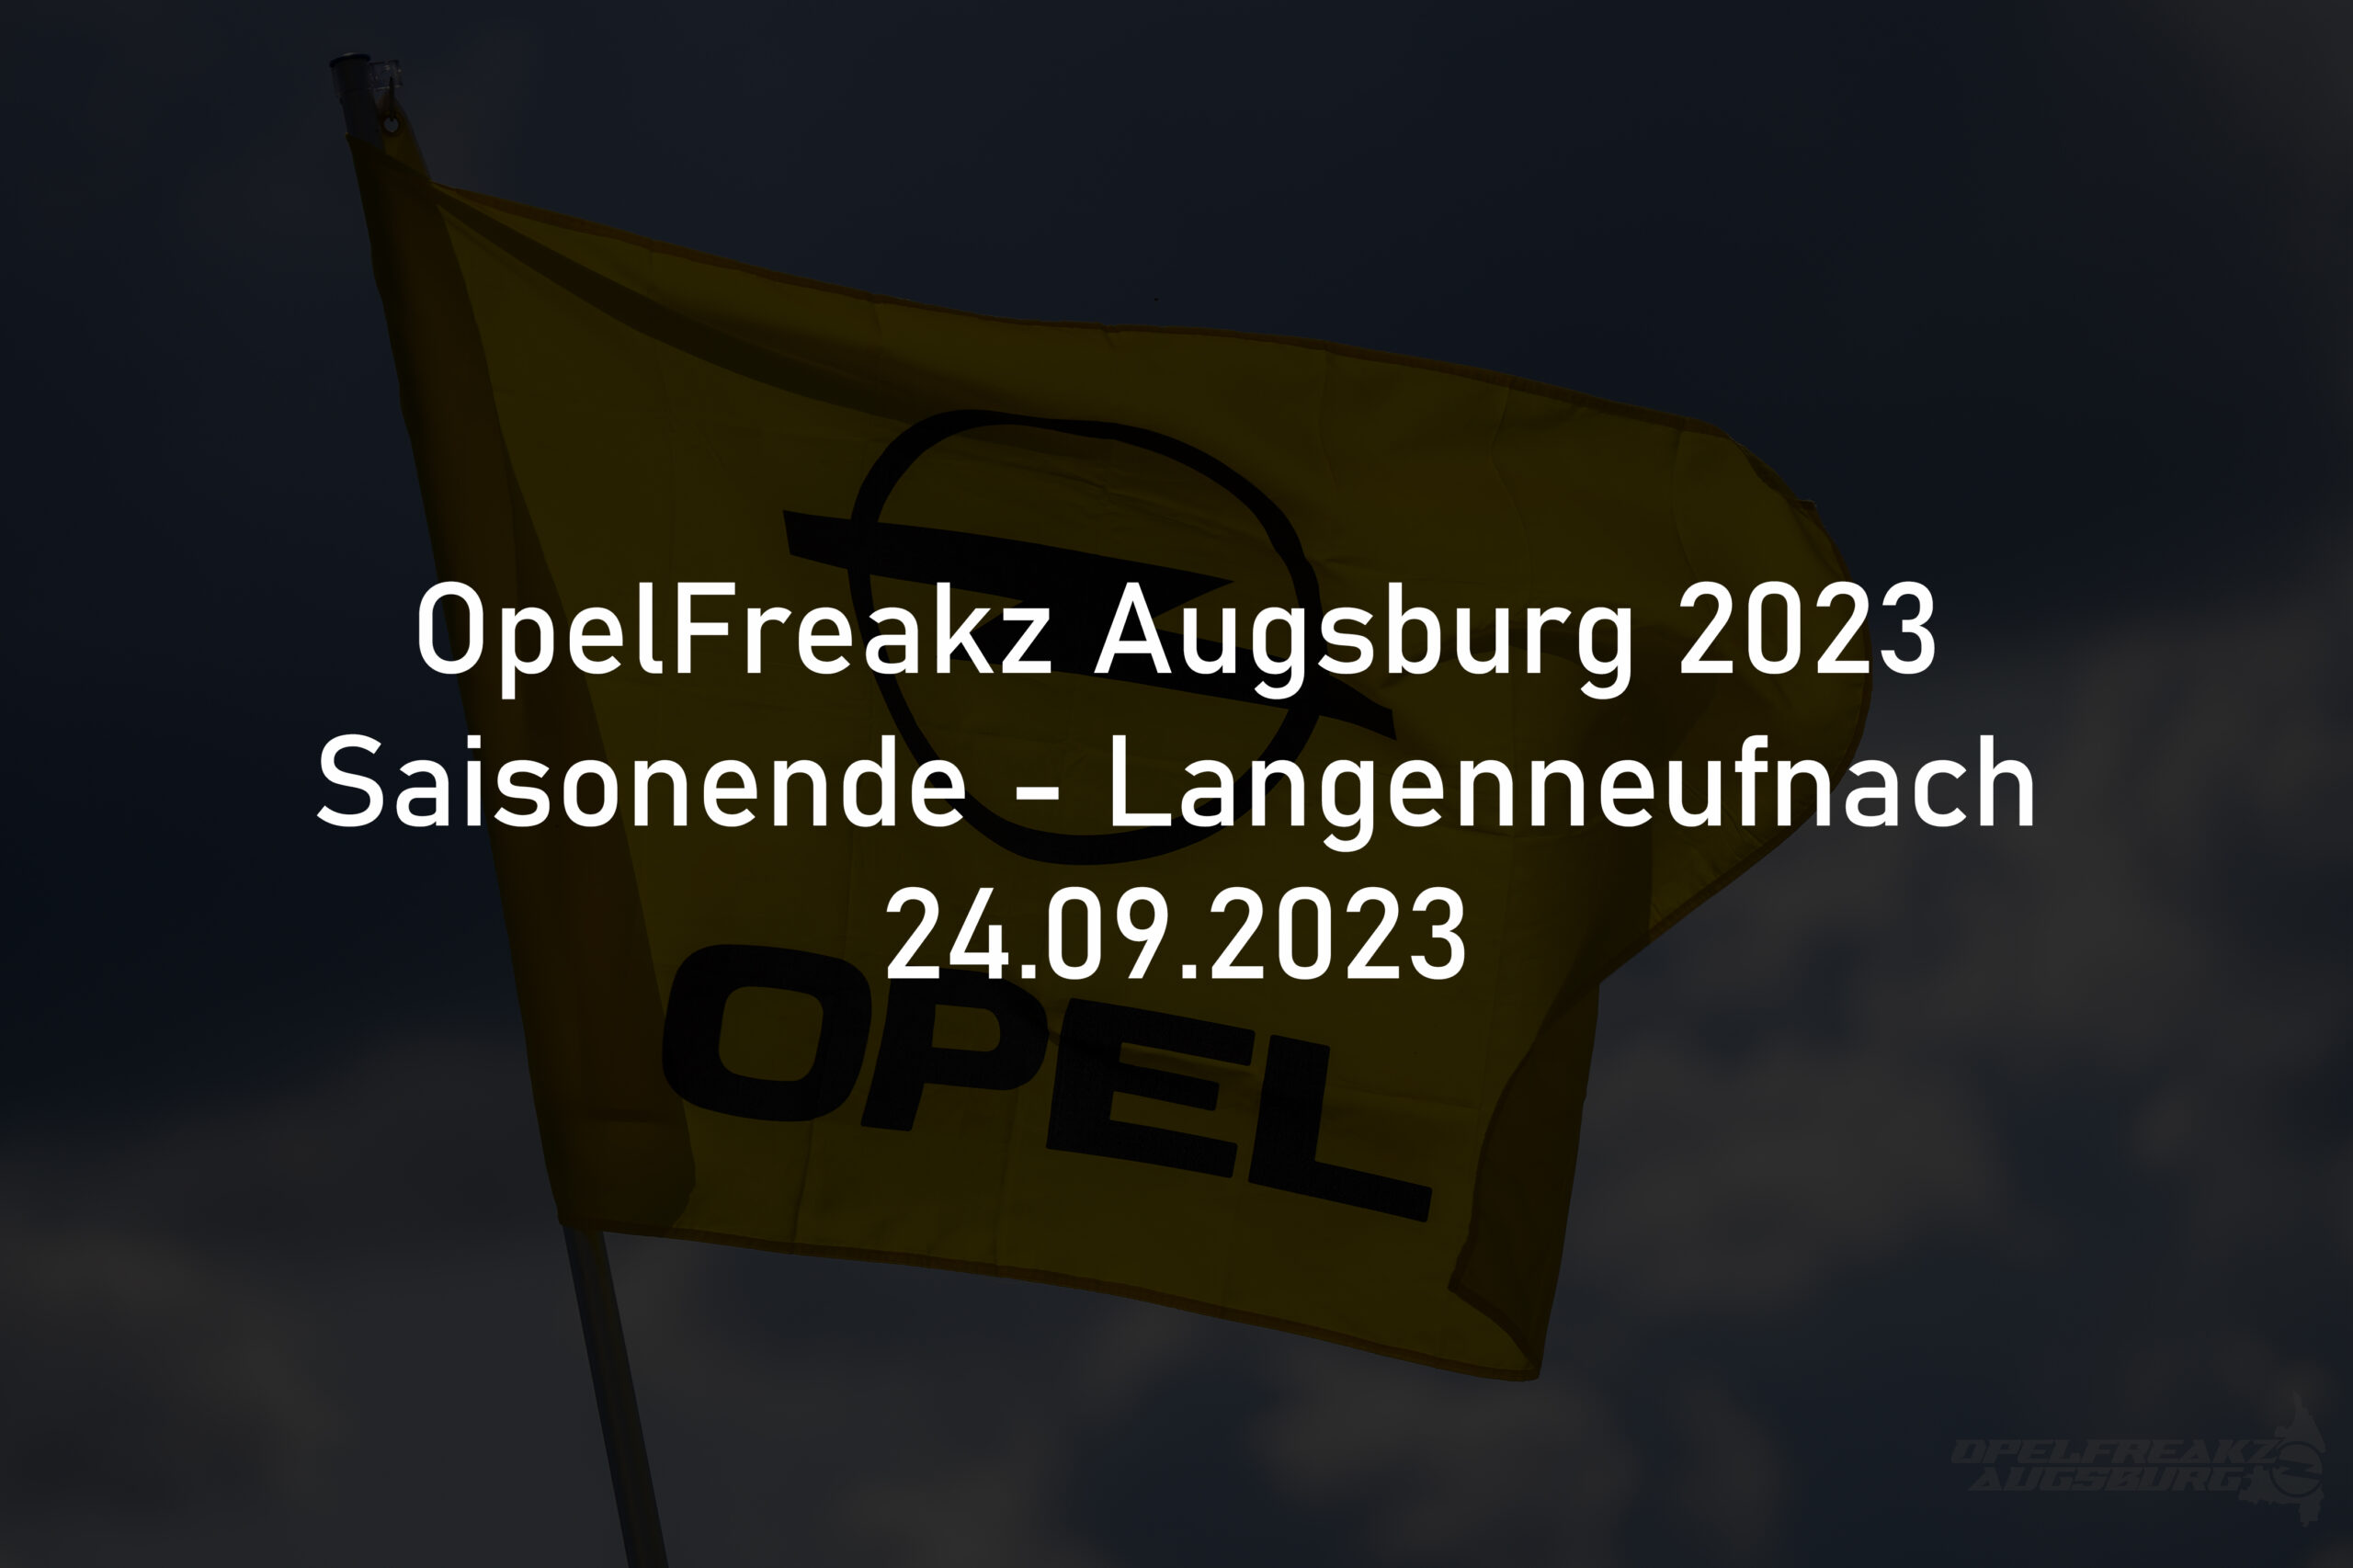 Saisonende OpelFreakz Augsburg Langenneufnach 2023